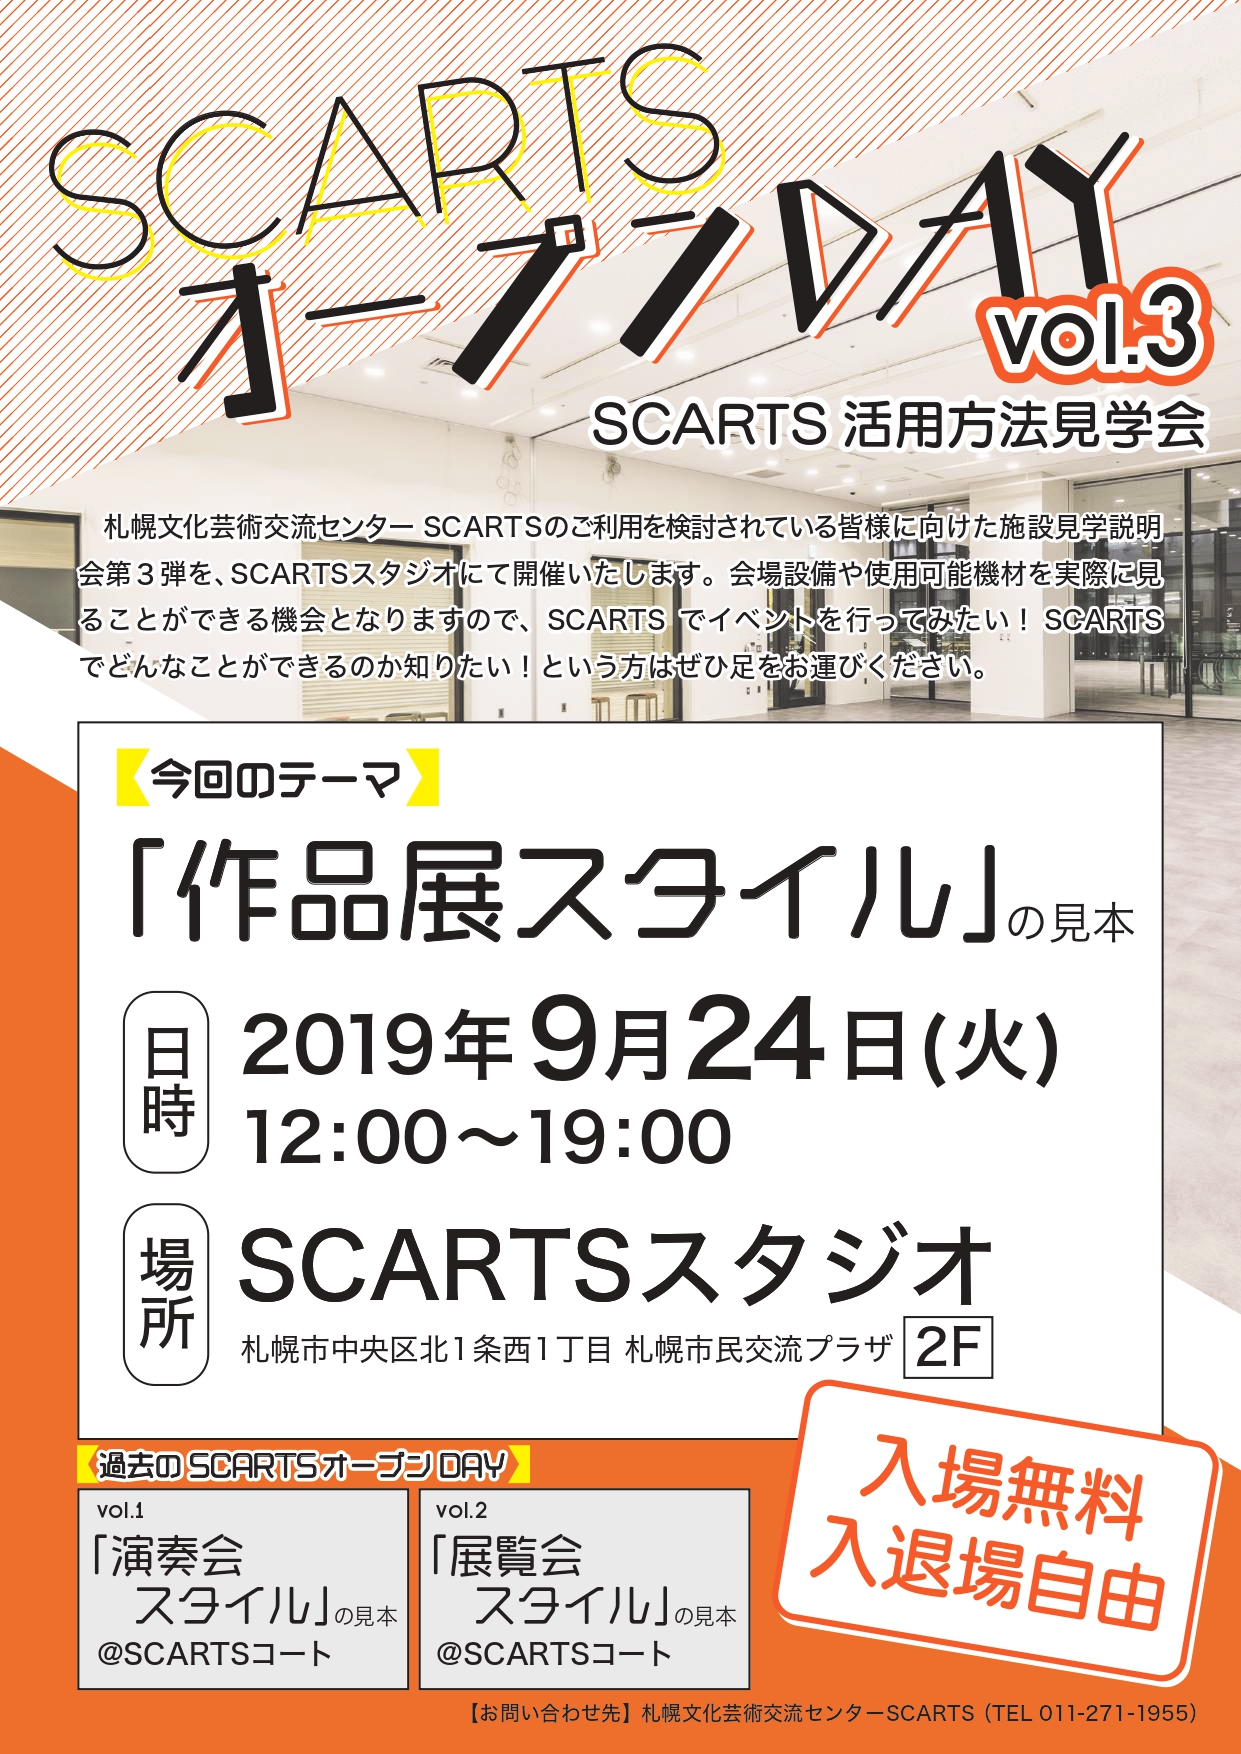 SCARTSオープンDAY vol.3「作品展スタイル」の見本-SCARTS活用方法見学会-イメージ